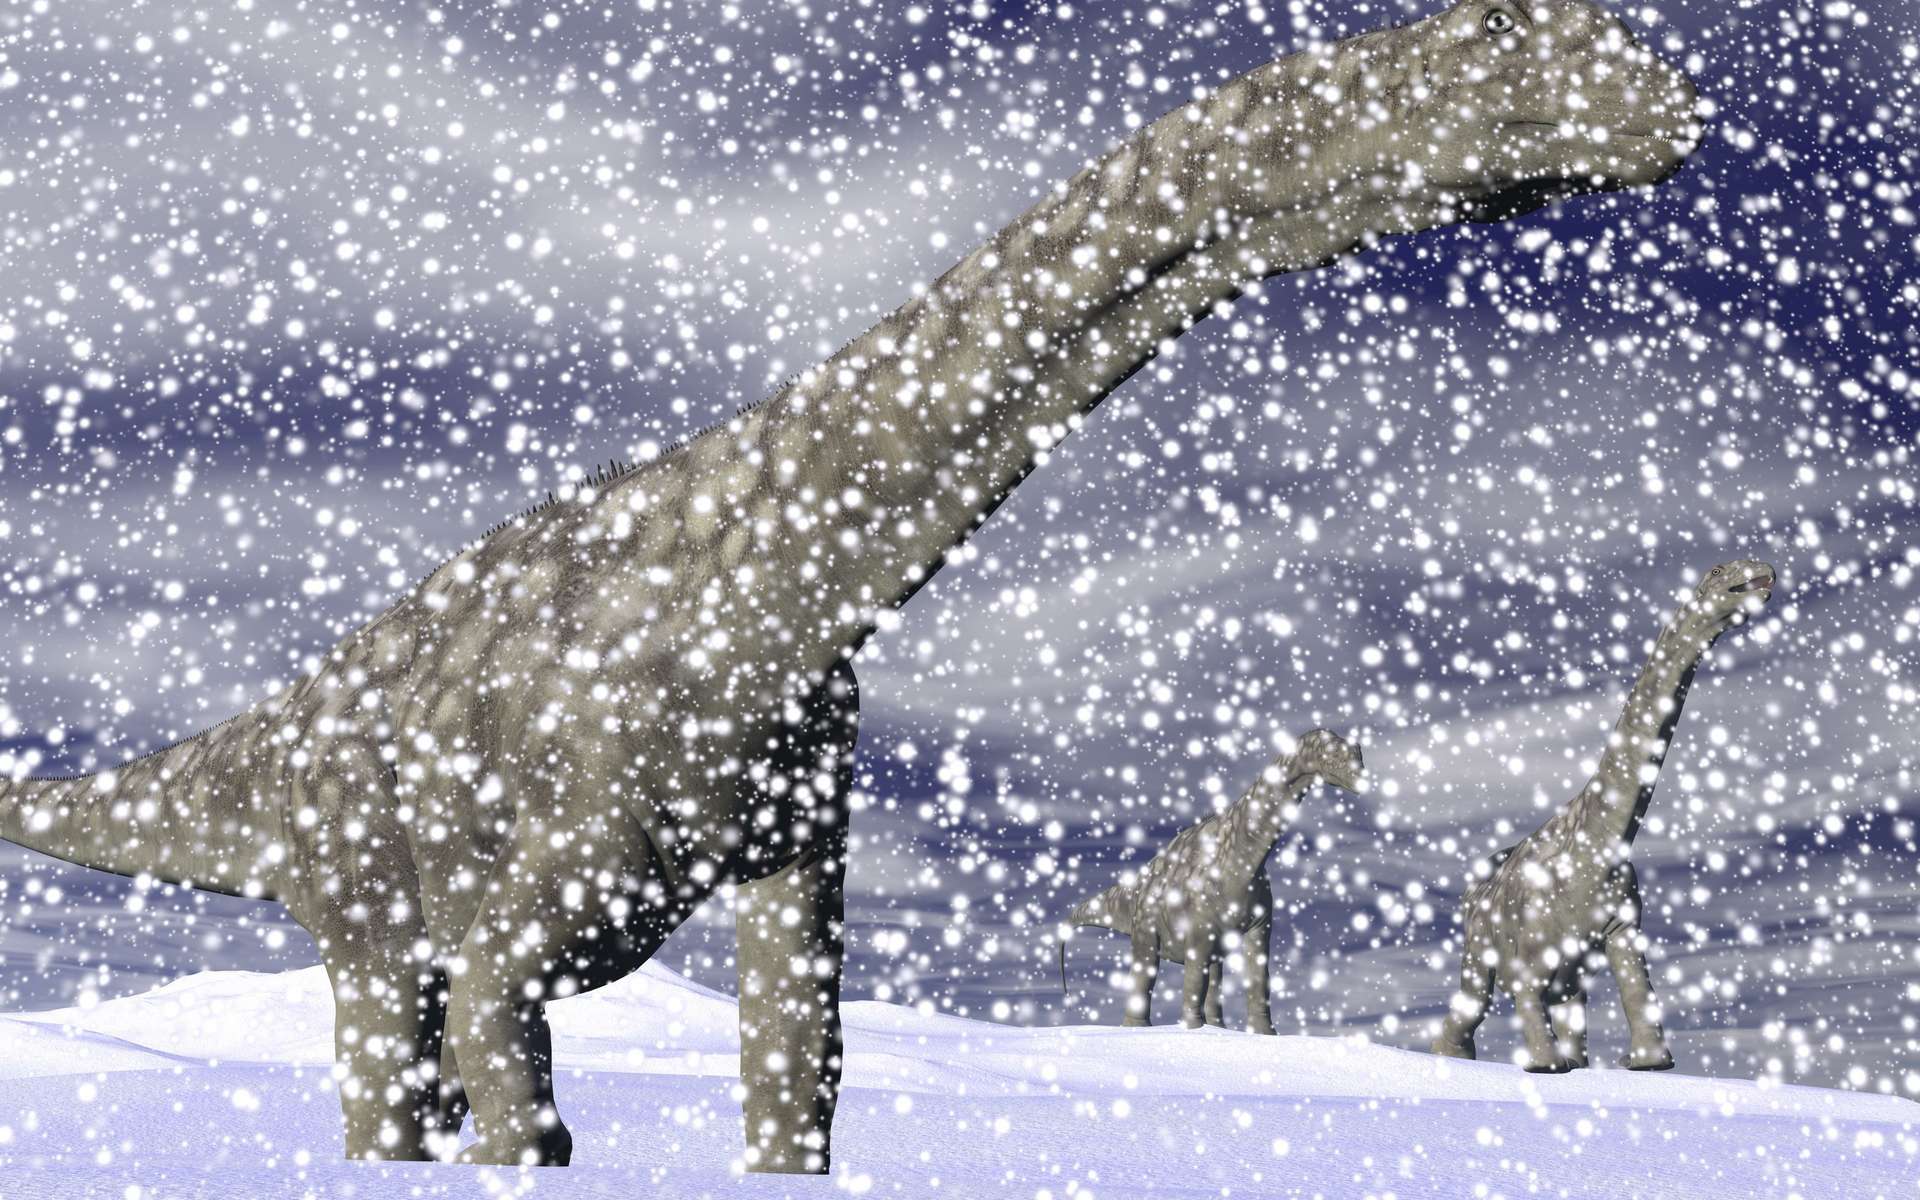 Les dinosaures ont survécu à l'extinction du Trias-Jurassique grâce à leur adaptation au froid. © Elenarts, Adobe Stock